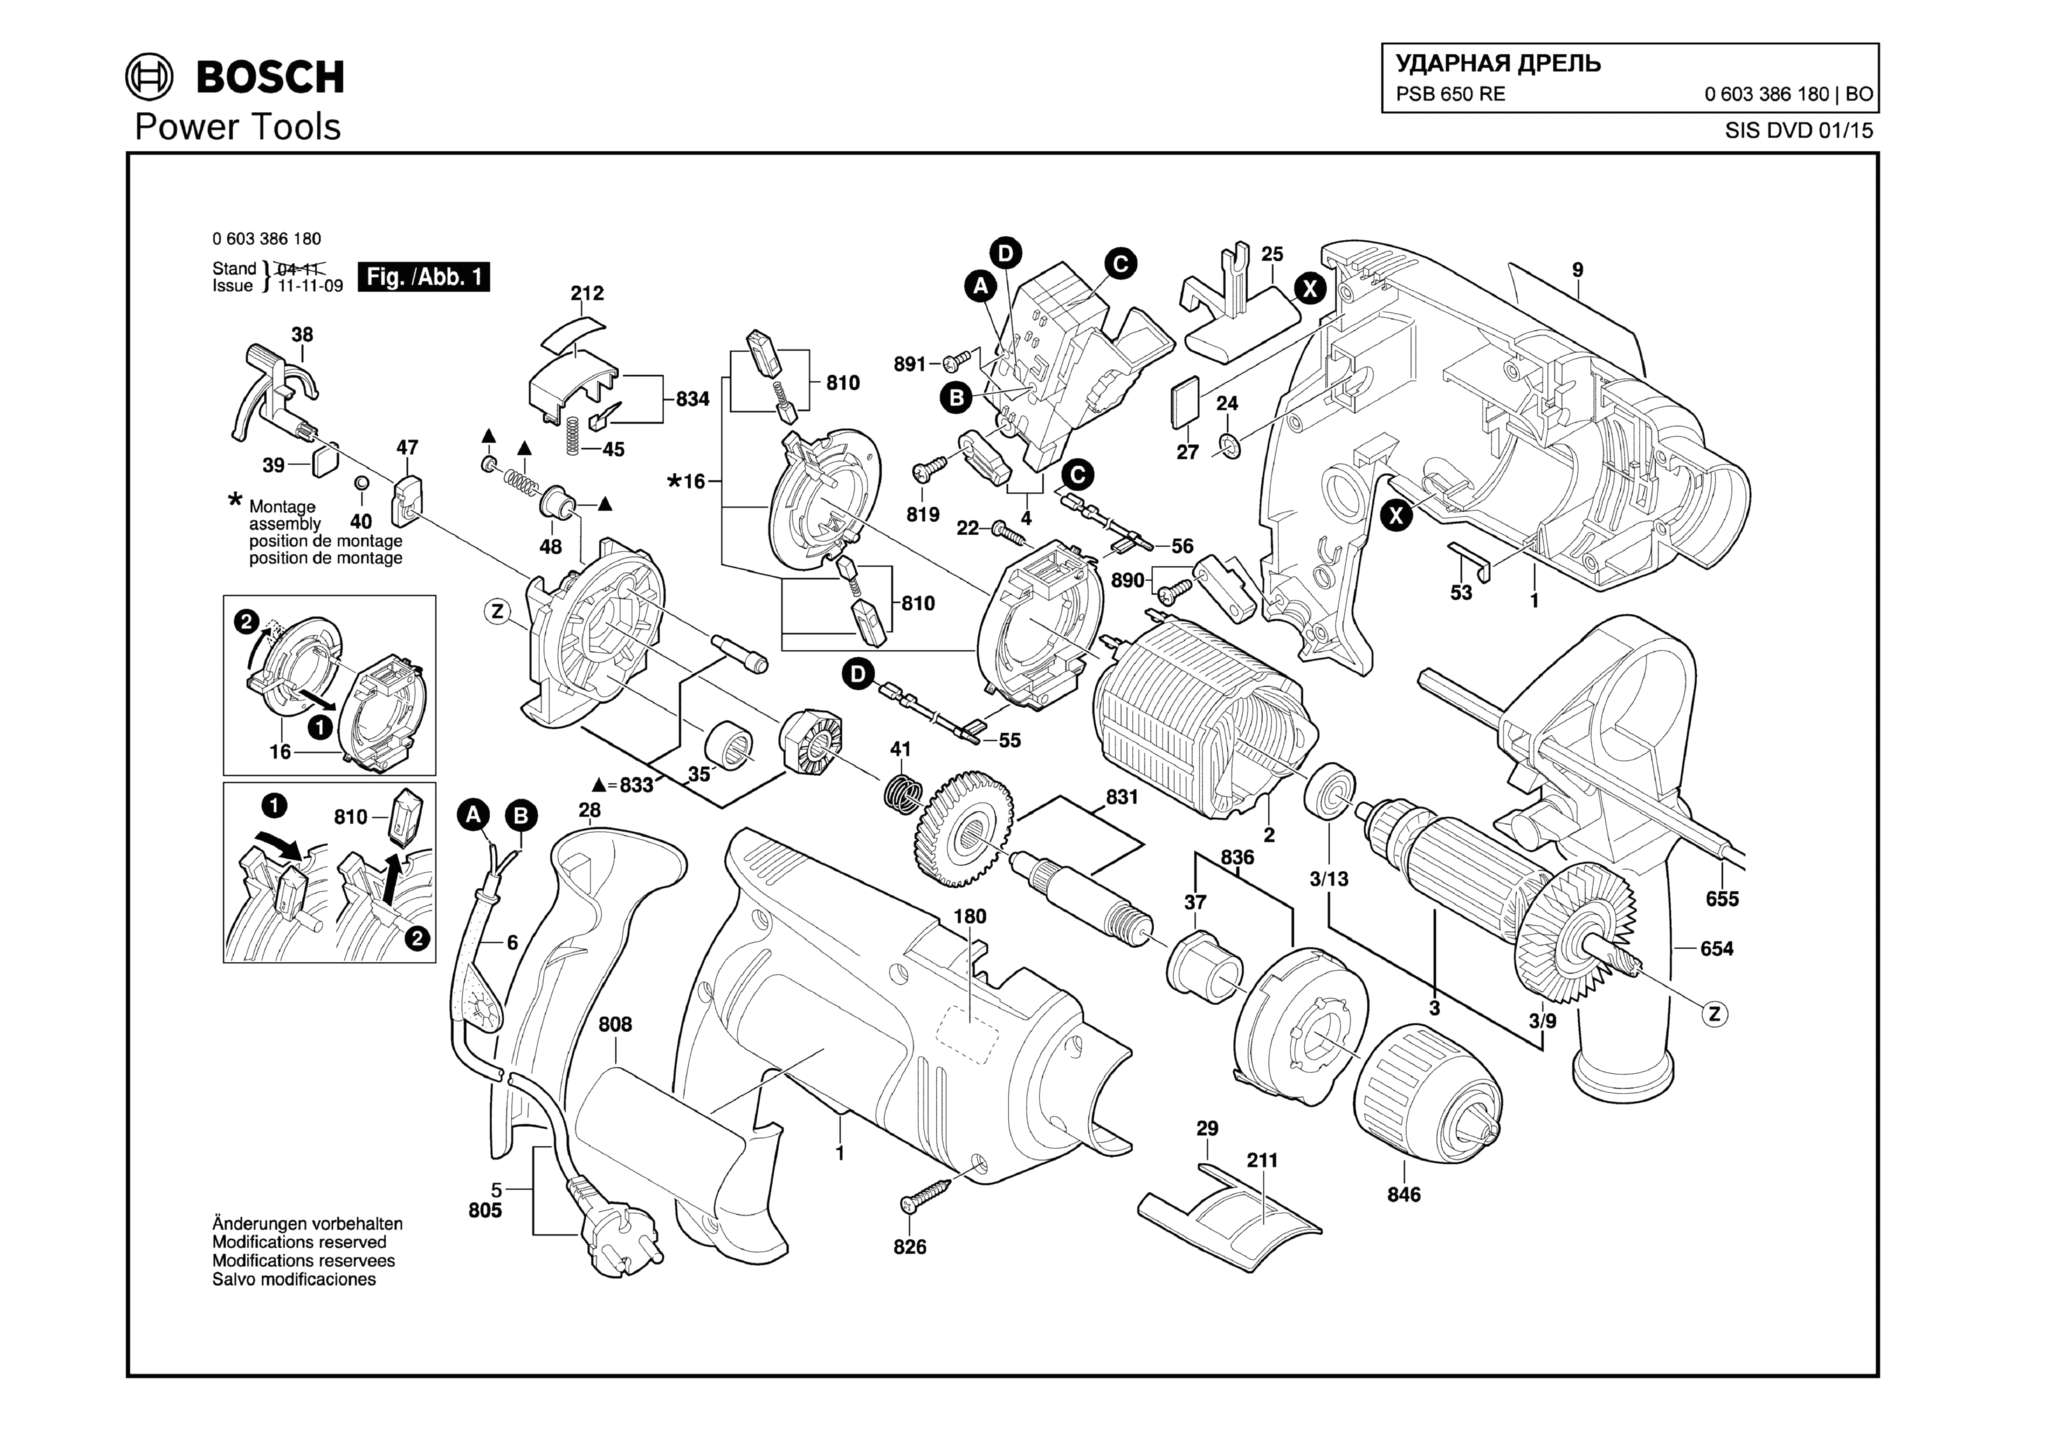 Запчасти, схема и деталировка Bosch PSB 650 RE (ТИП 0603386180)